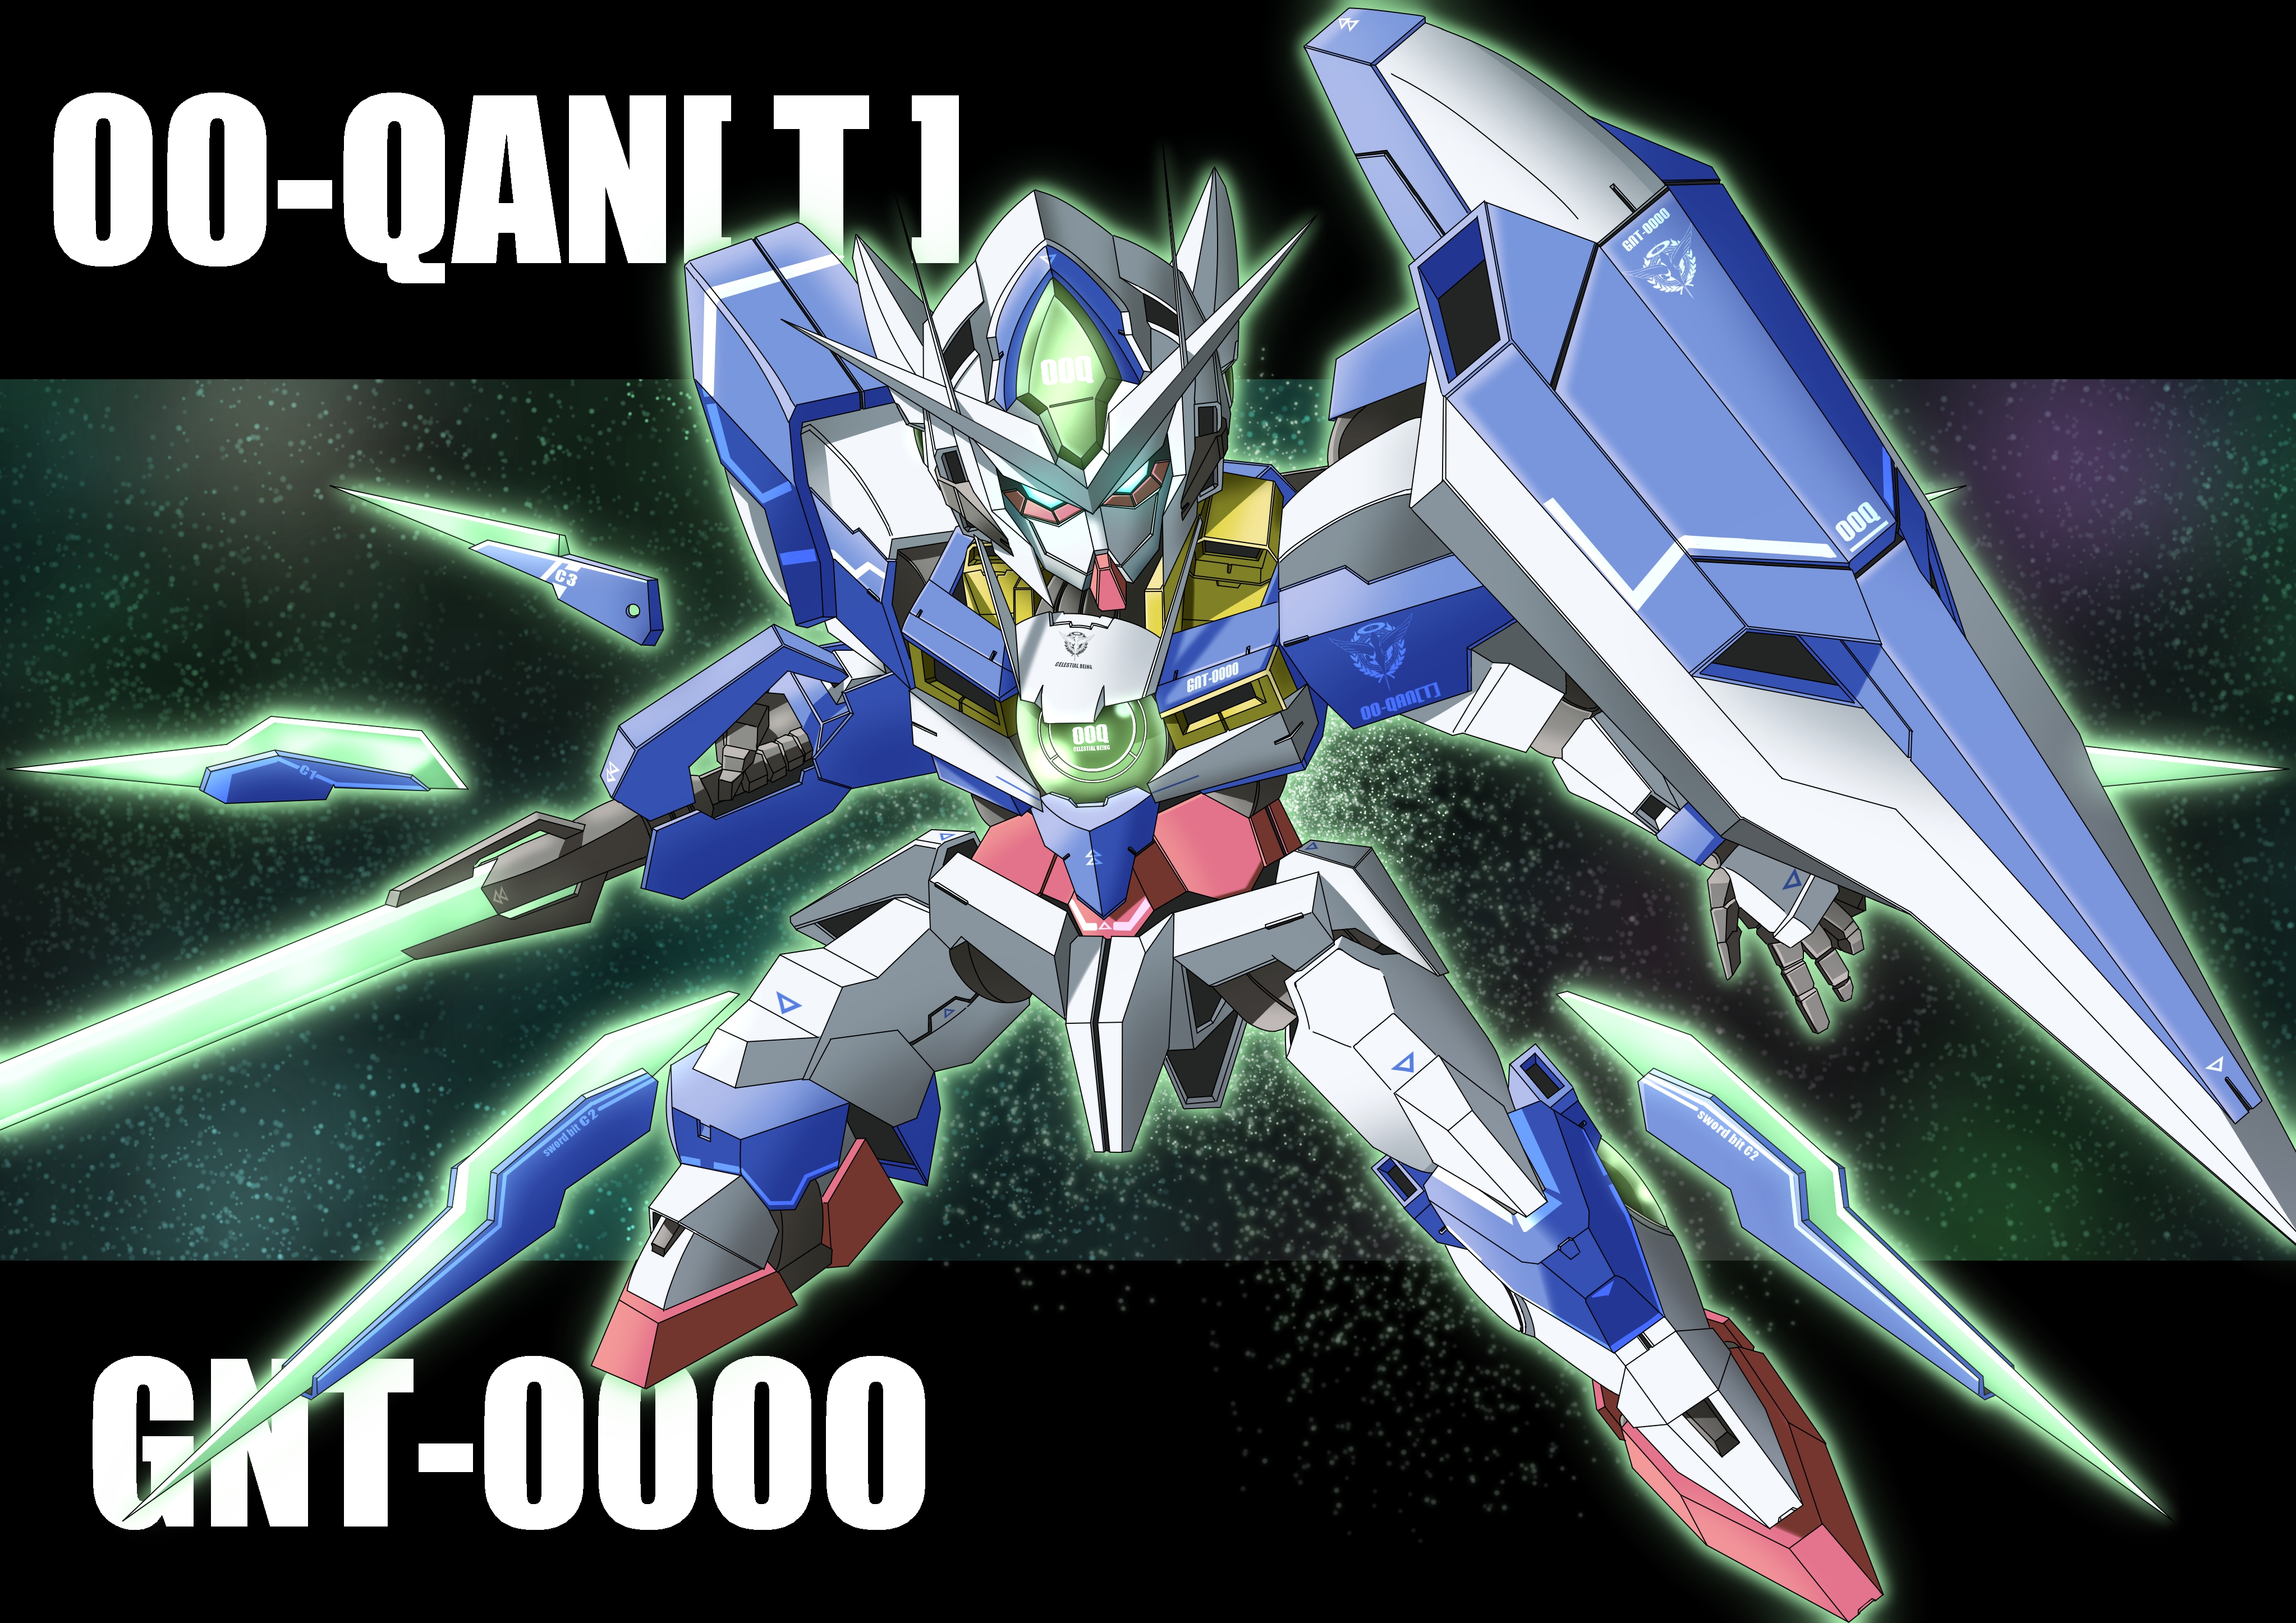 Anime 4092x2893 anime mechs Gundam Super Robot Taisen Mobile Suit Gundam 00 00 Qan[T] artwork digital art fan art